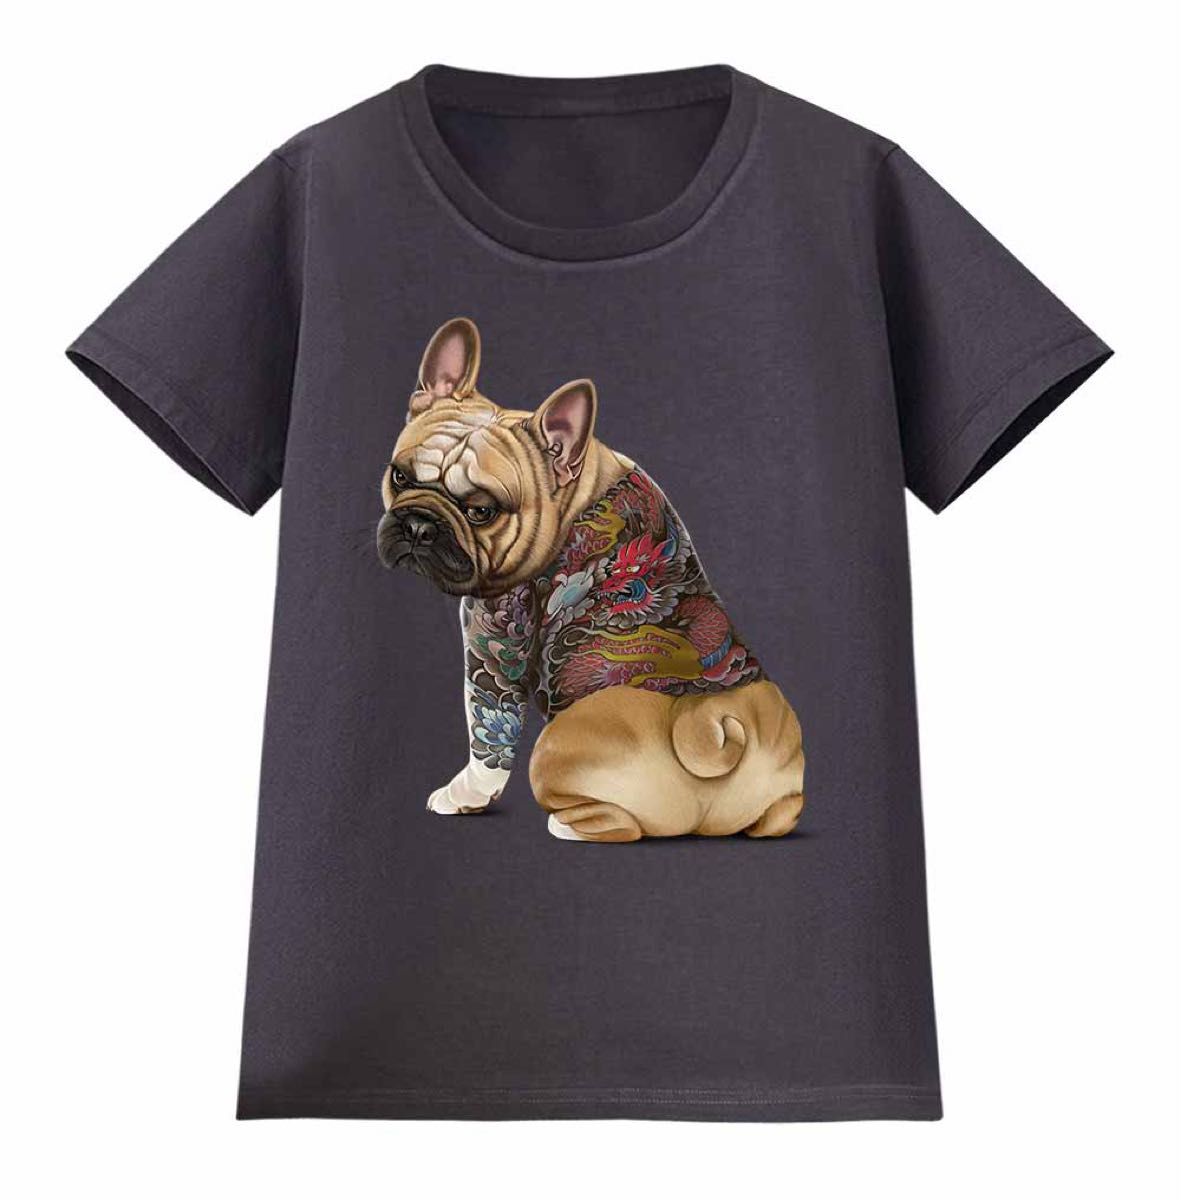 フレンチブルドッグ 犬 いぬ タトゥー 刺青 半袖 Tシャツ メンズ レディース